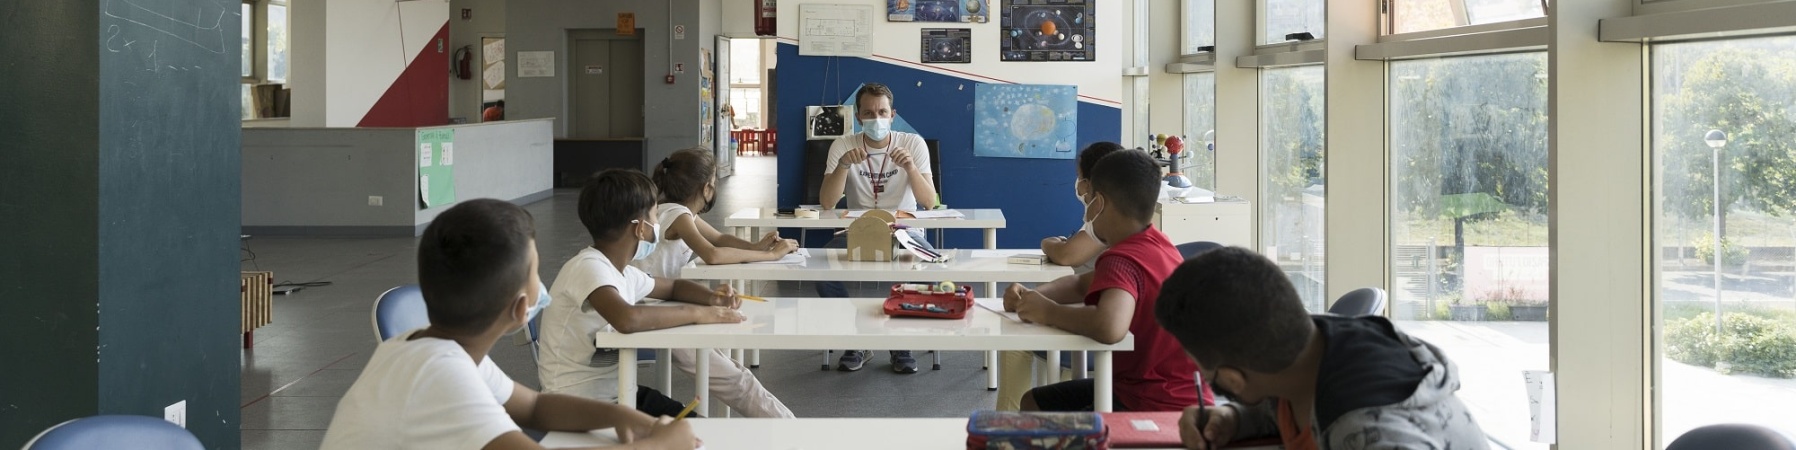 ragazzi e ragazze seduti ad un tavolo in un aula di un punto luce ascoltano un educatore che gli parla